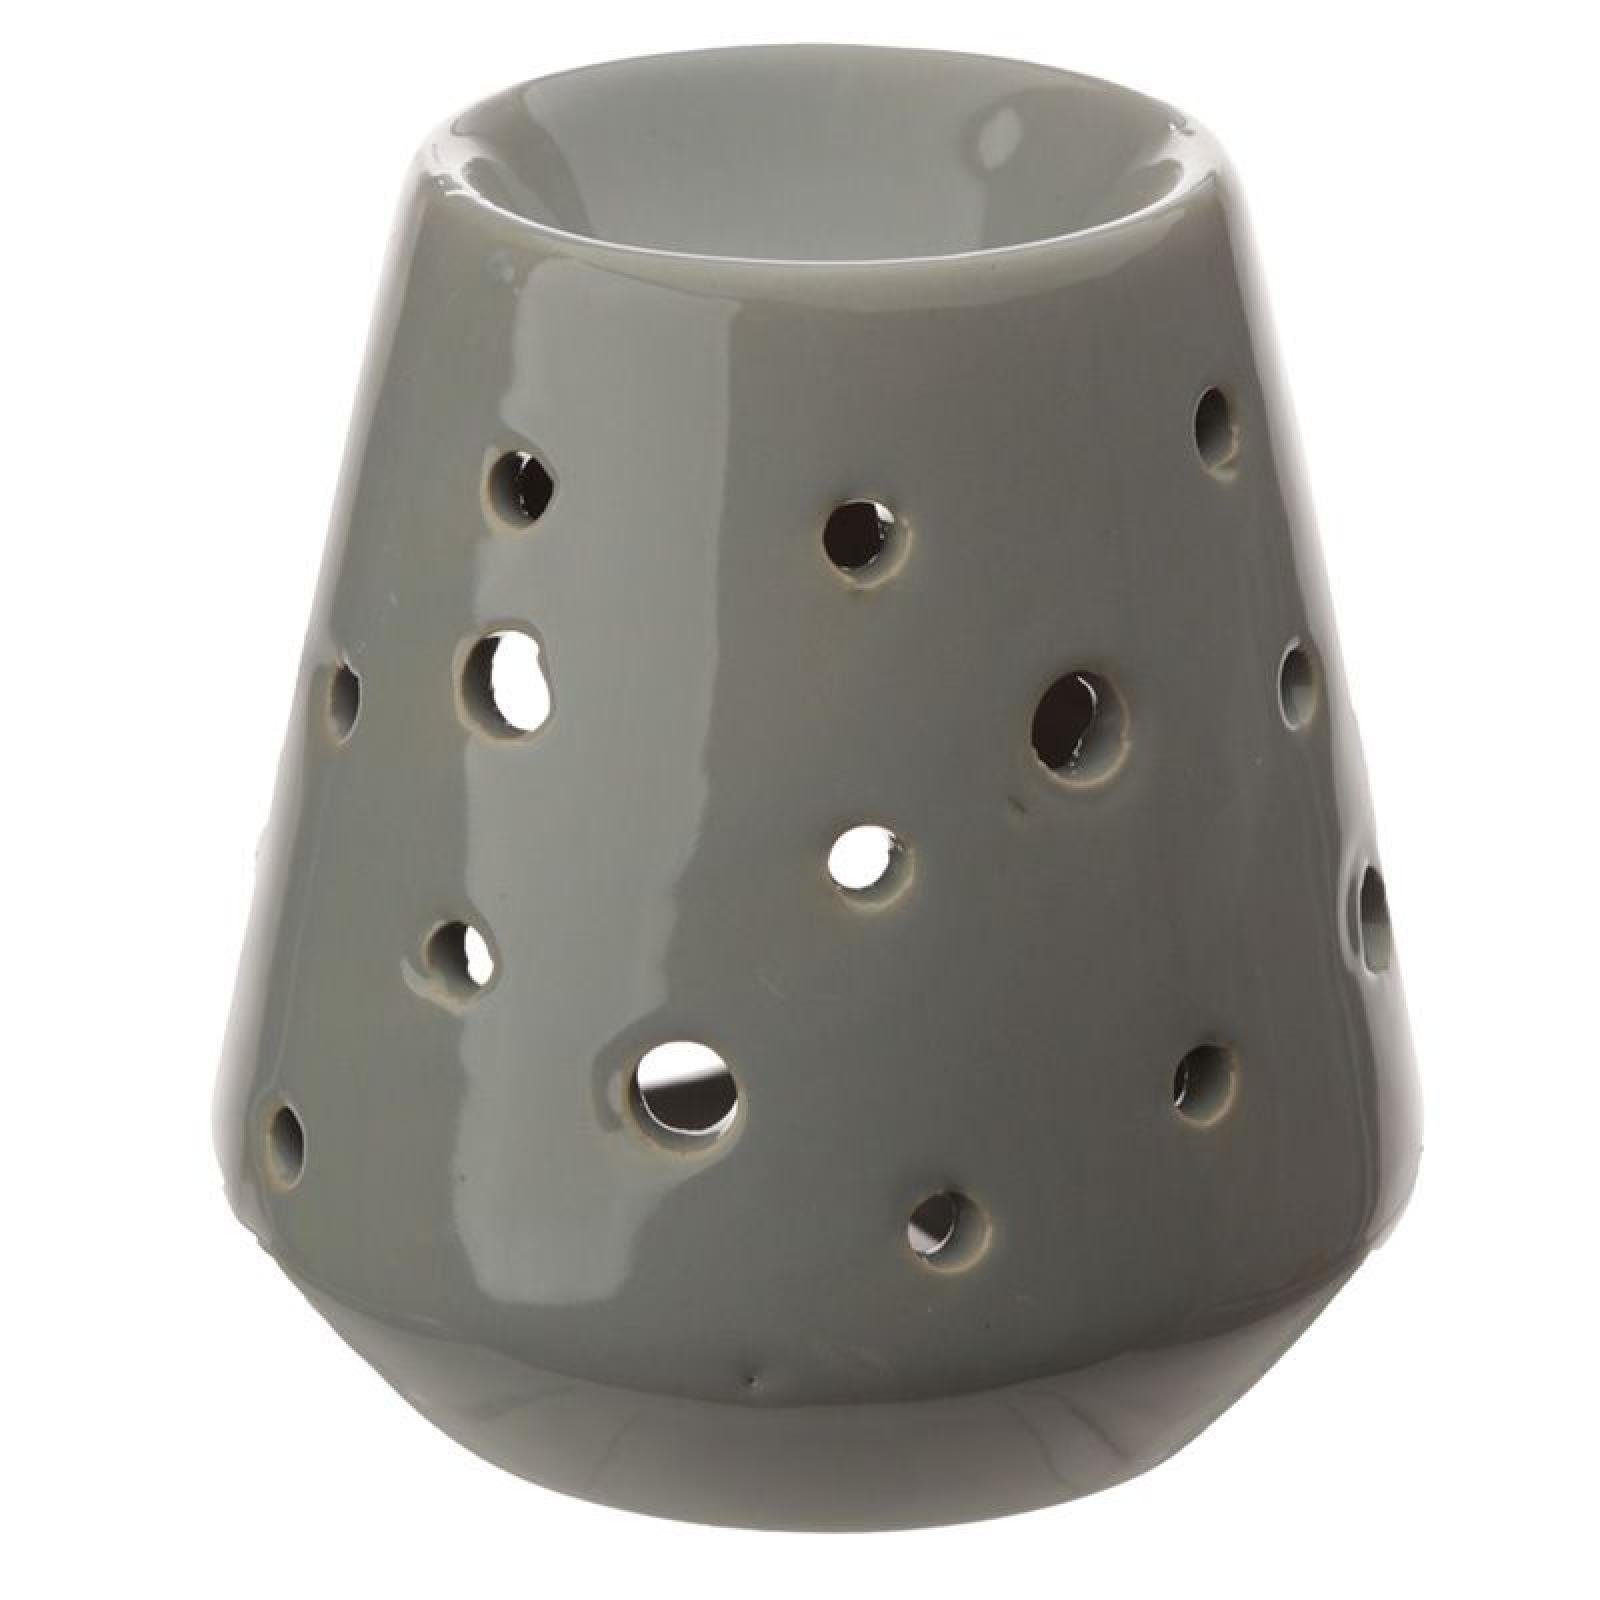 Eden Konierte Puckator mit Keramik Ausschnitten Duftlampe runden aus Duftlampe